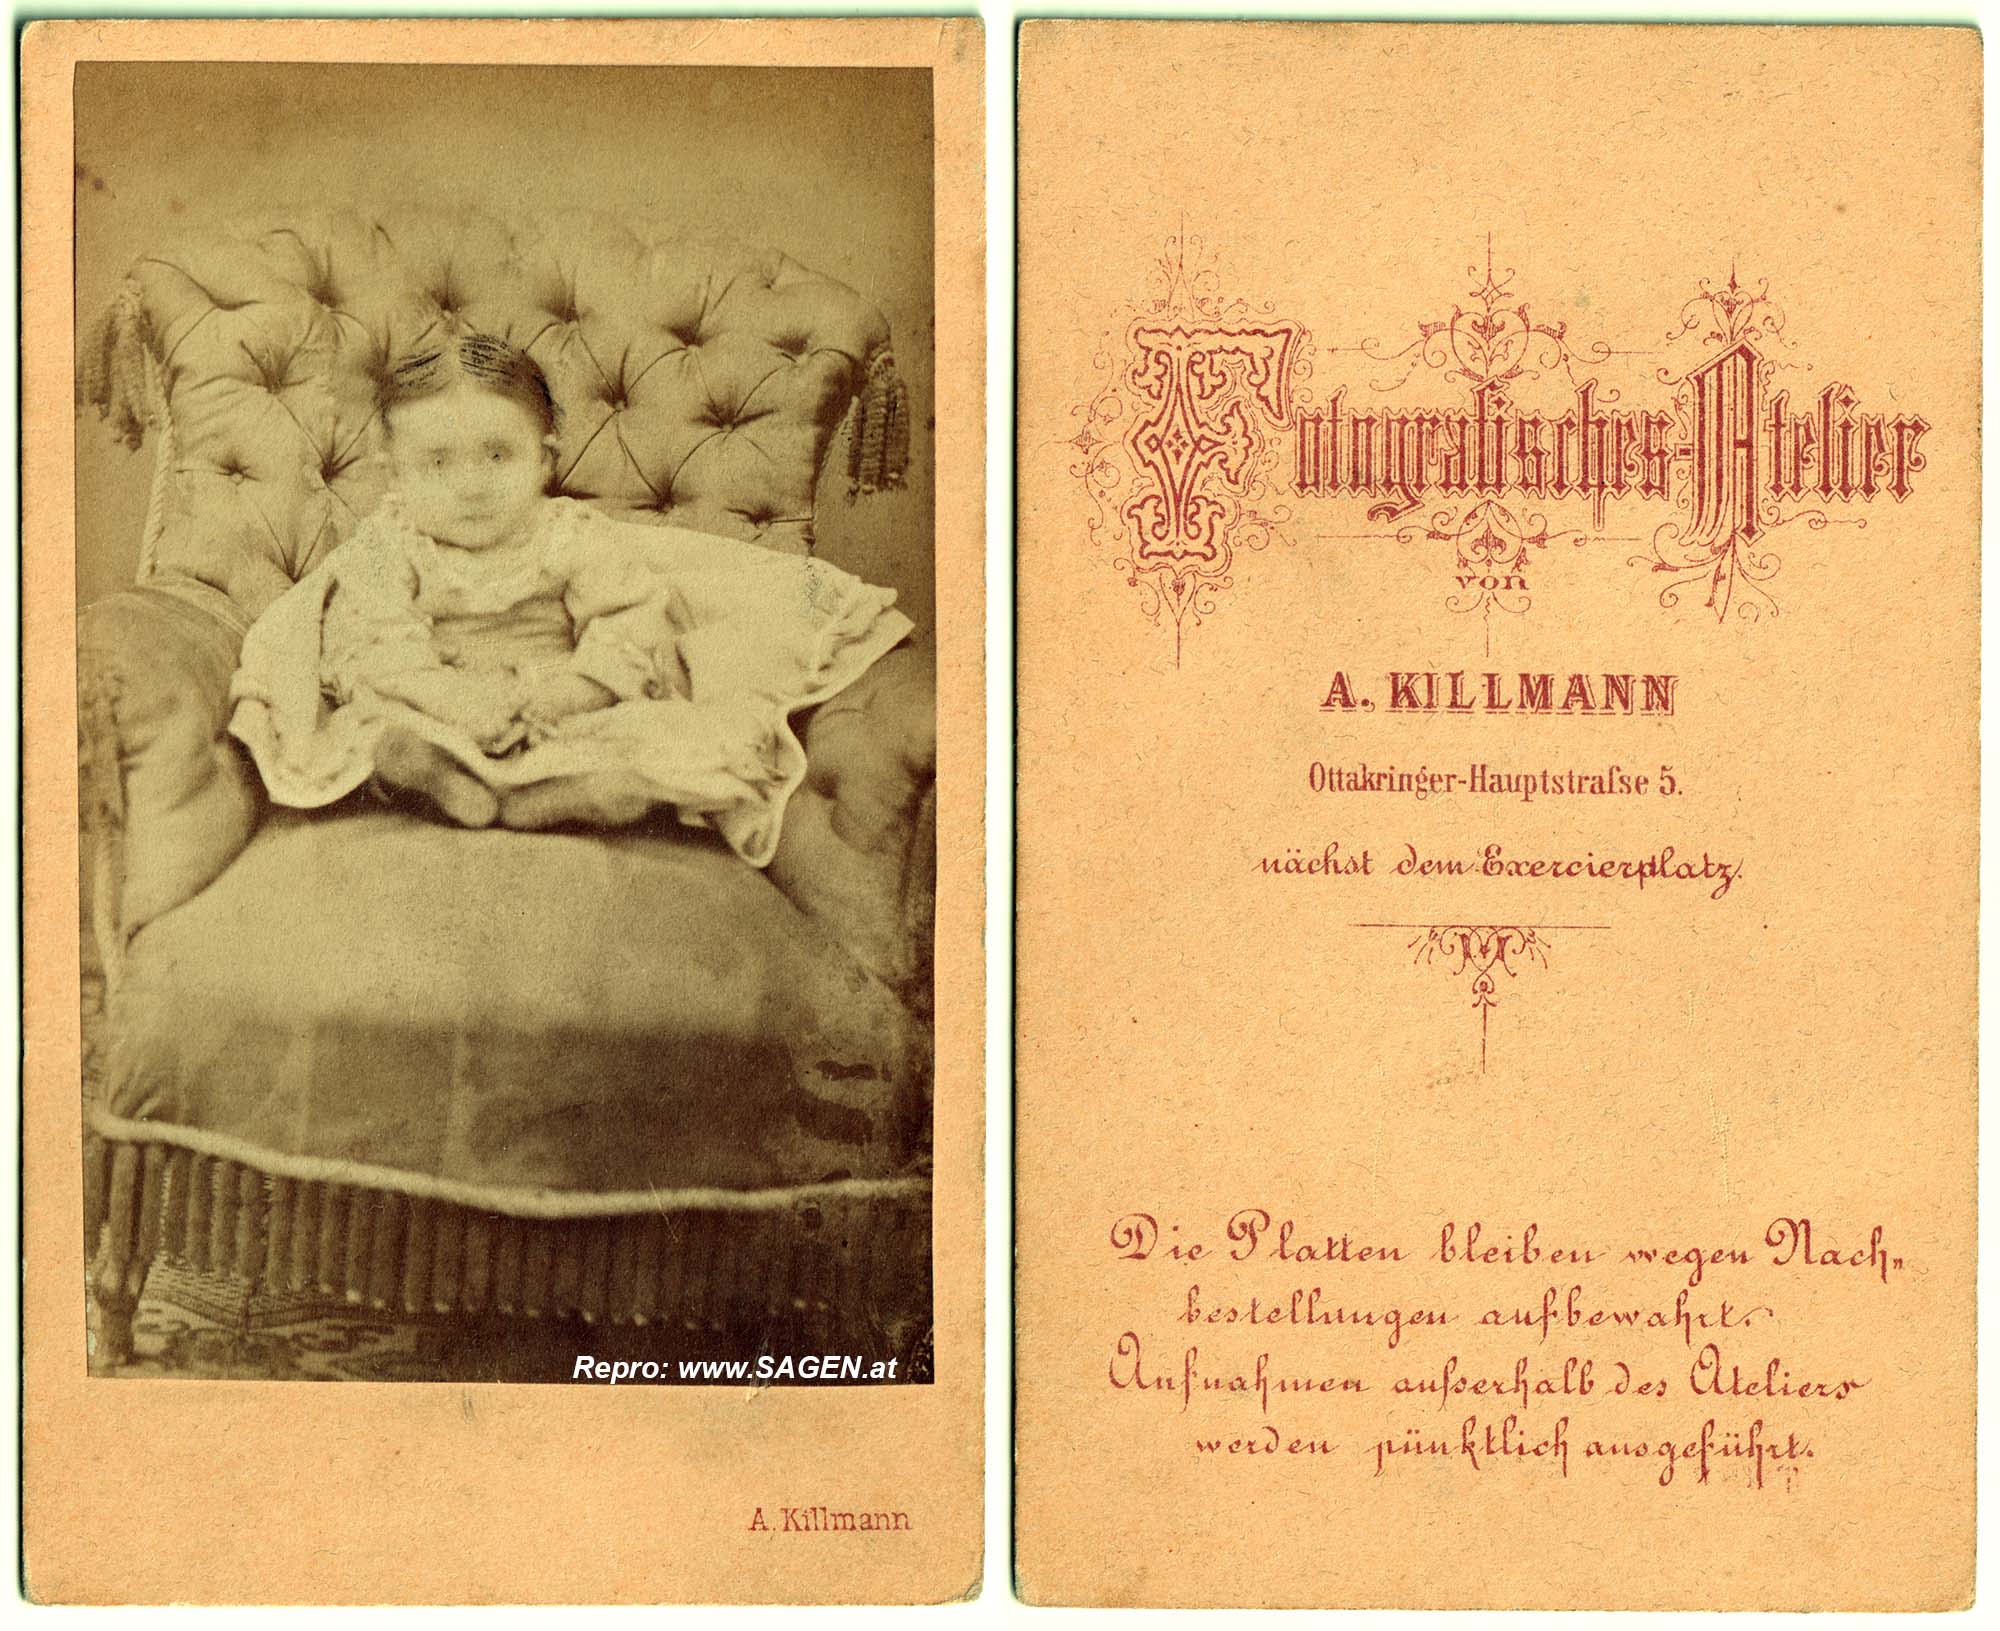 CdV Kinderporträt A. Killmann, Wien um 1870